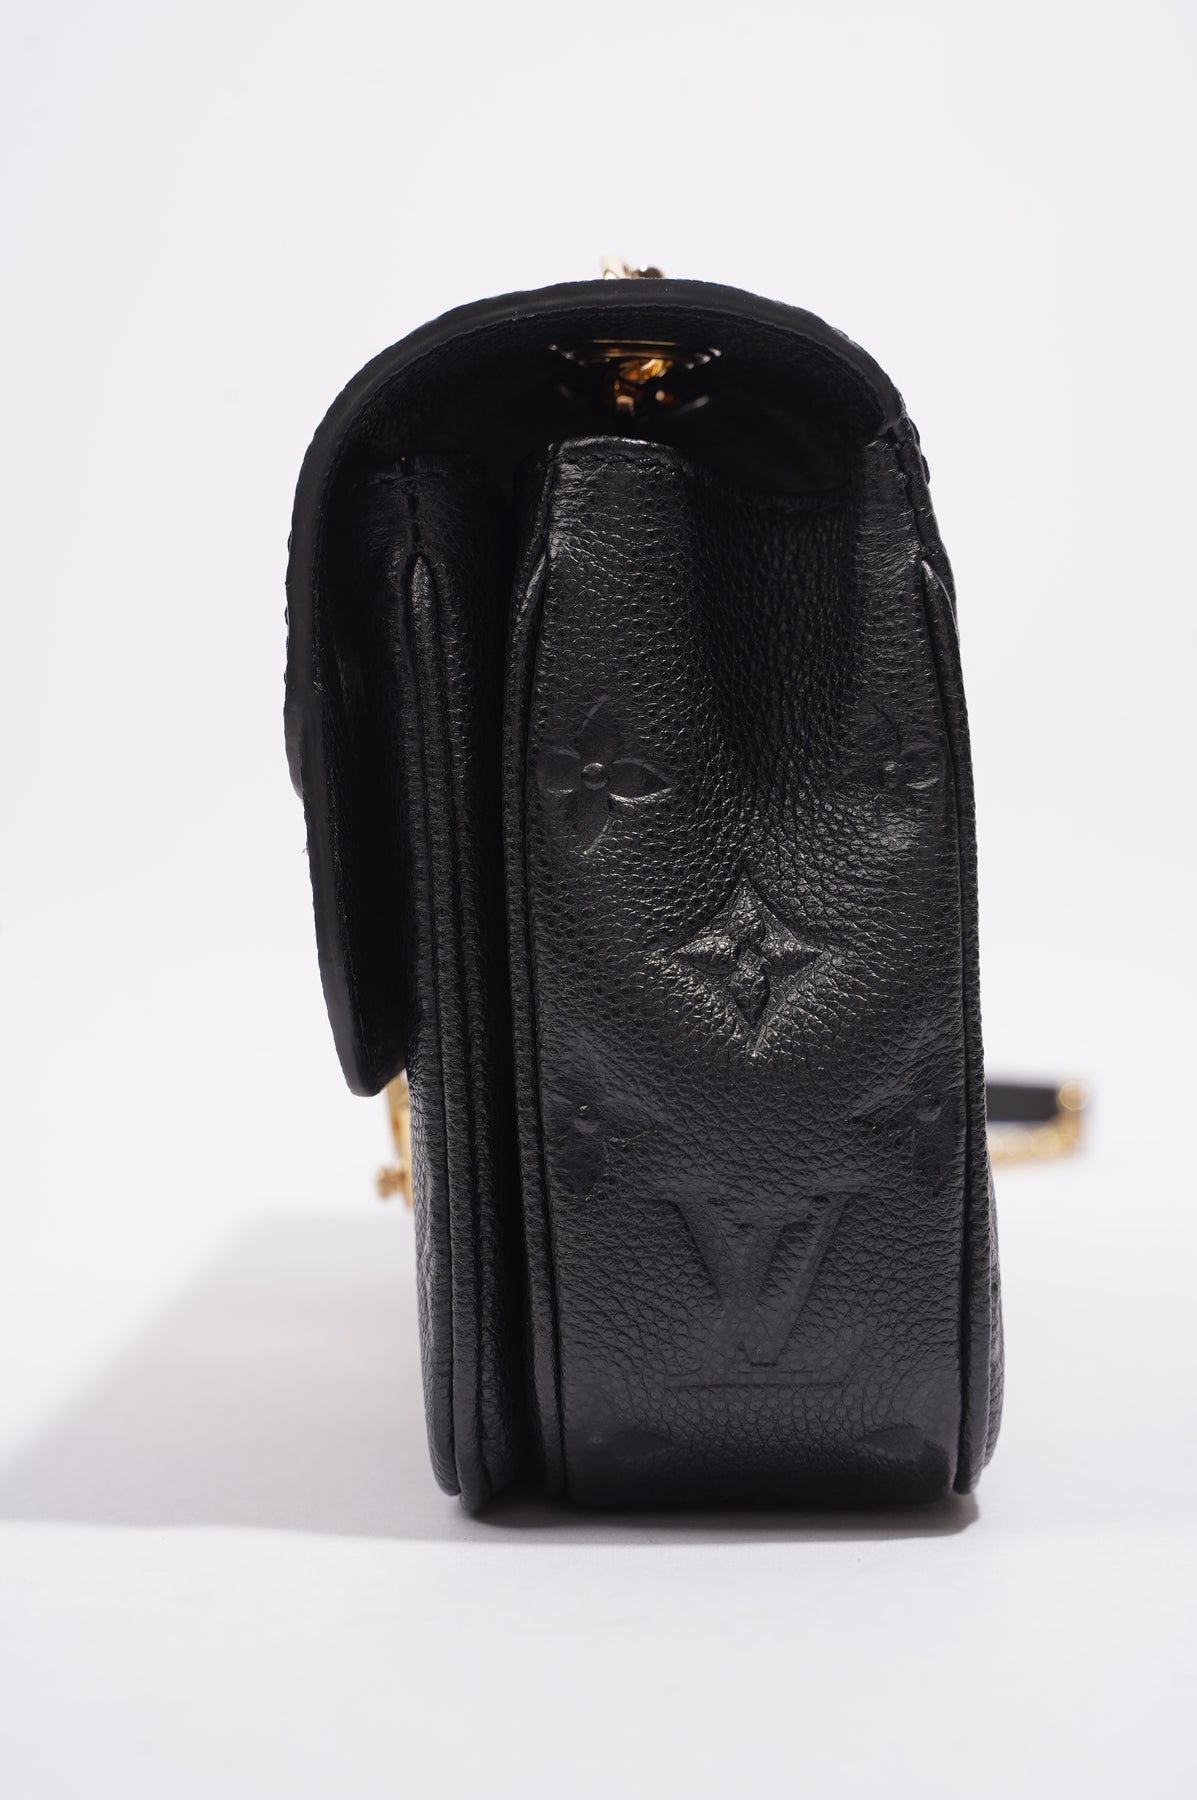 Louis Vuitton Marceau Handbag Monogram Empreinte Leather - ShopStyle  Shoulder Bags